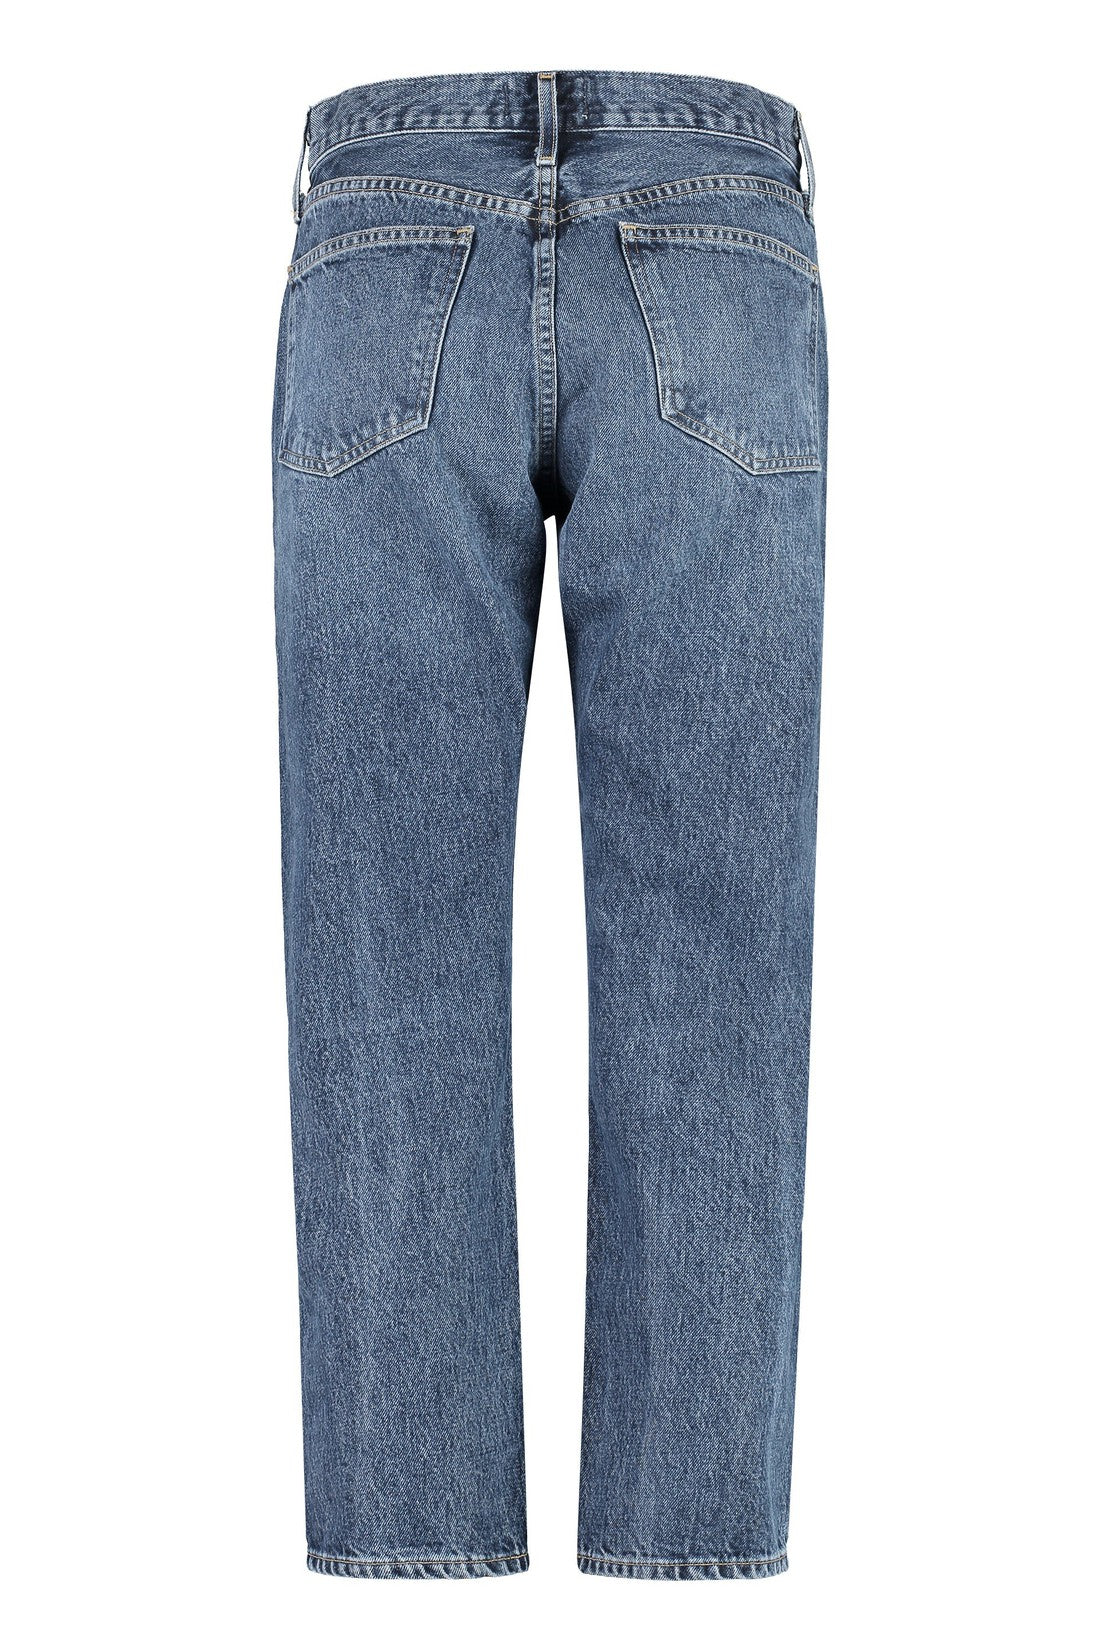 AGOLDE-OUTLET-SALE-Parker jeans-ARCHIVIST